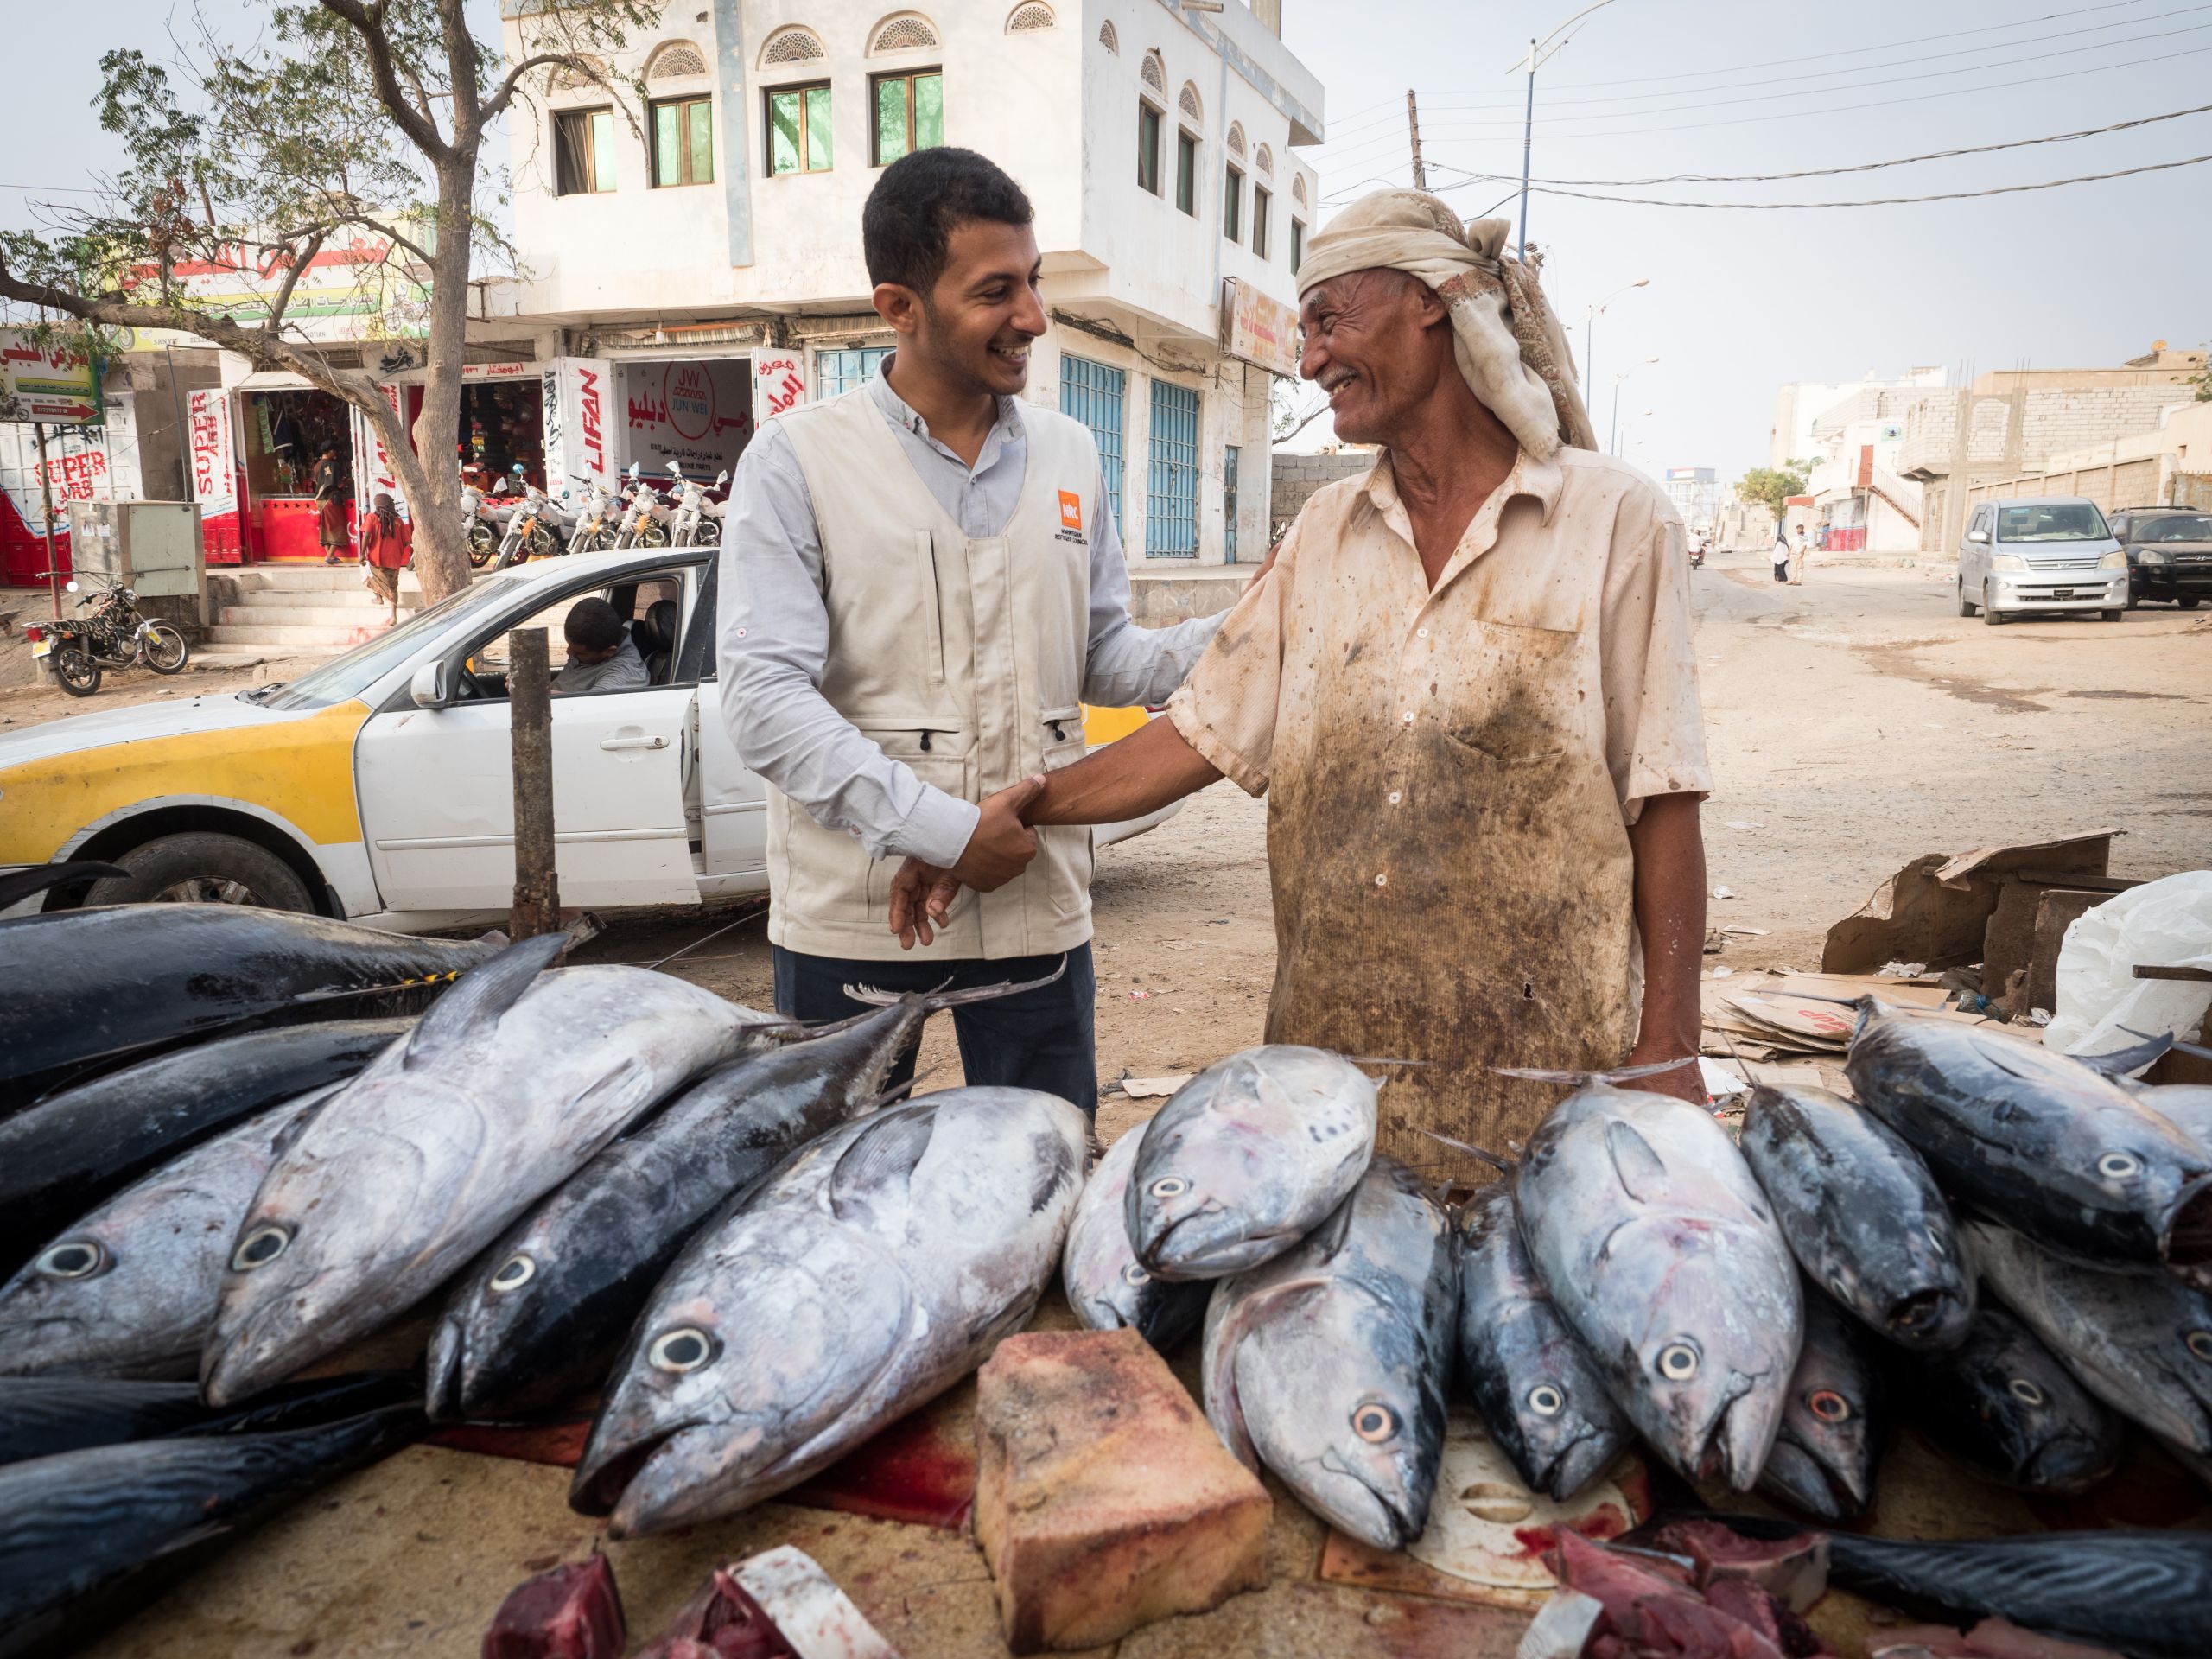 Yemen - How fishing communities are fighting back